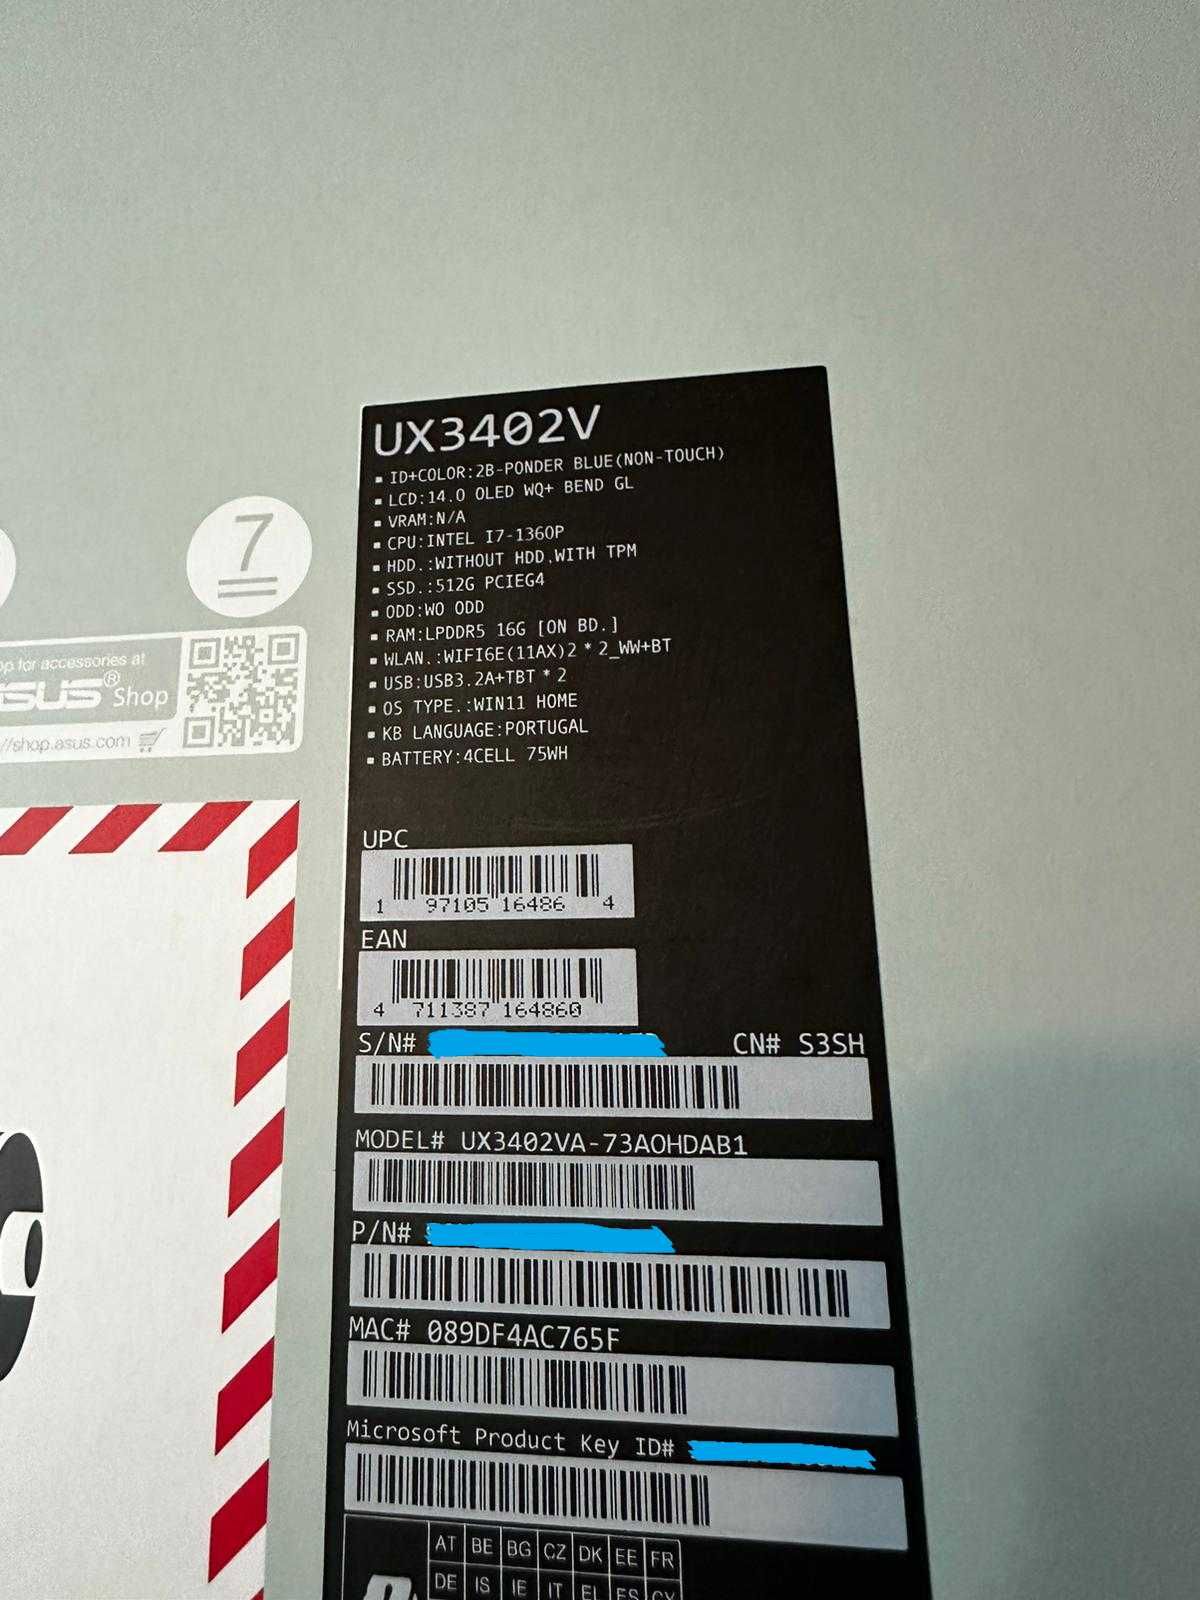 ASUS Zenbook 14 OLED UX3402 NOVO